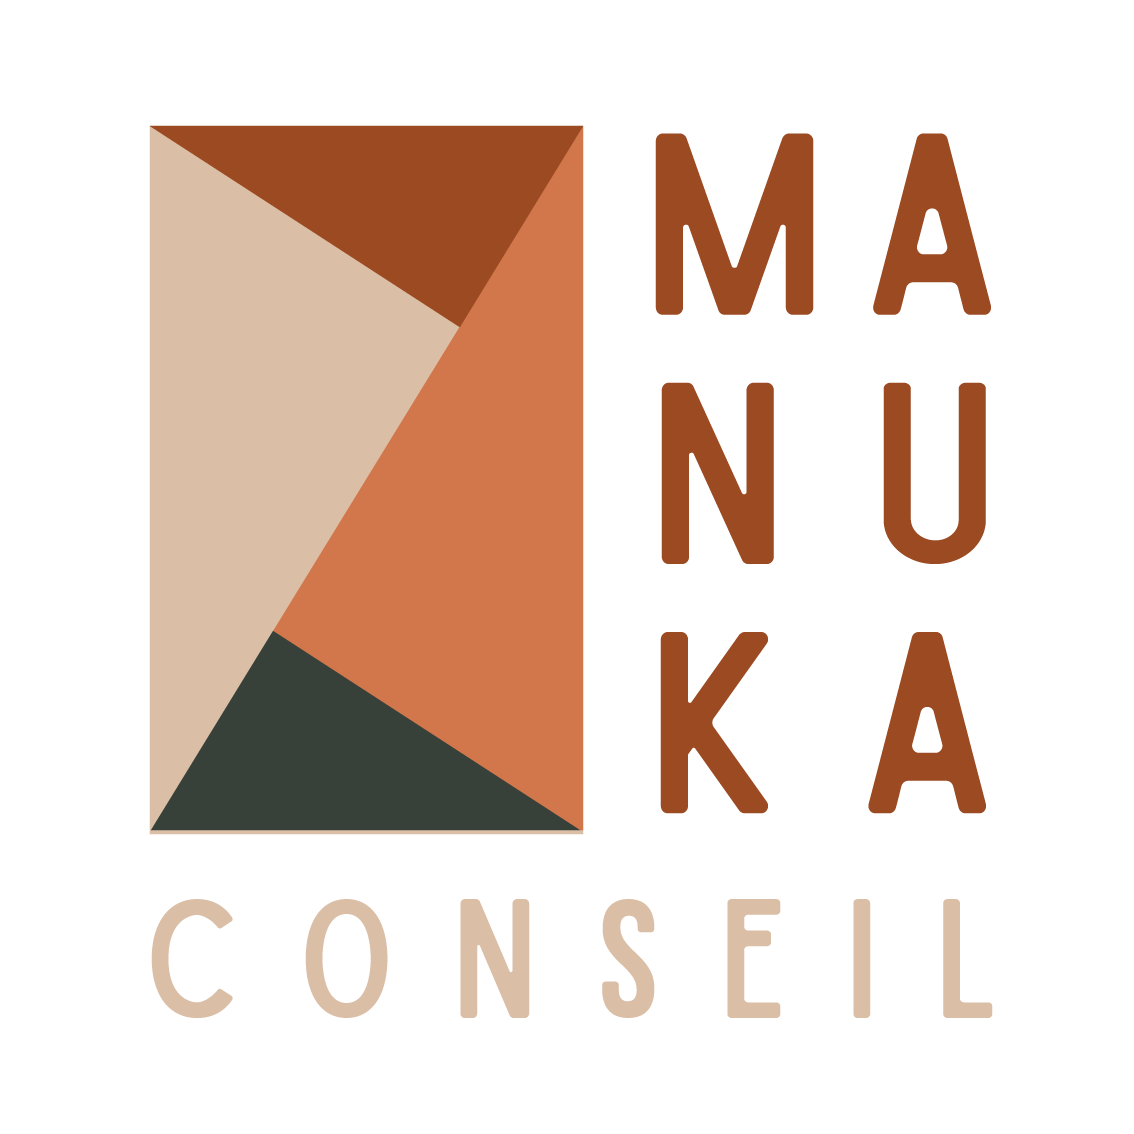 Manuka Conseil